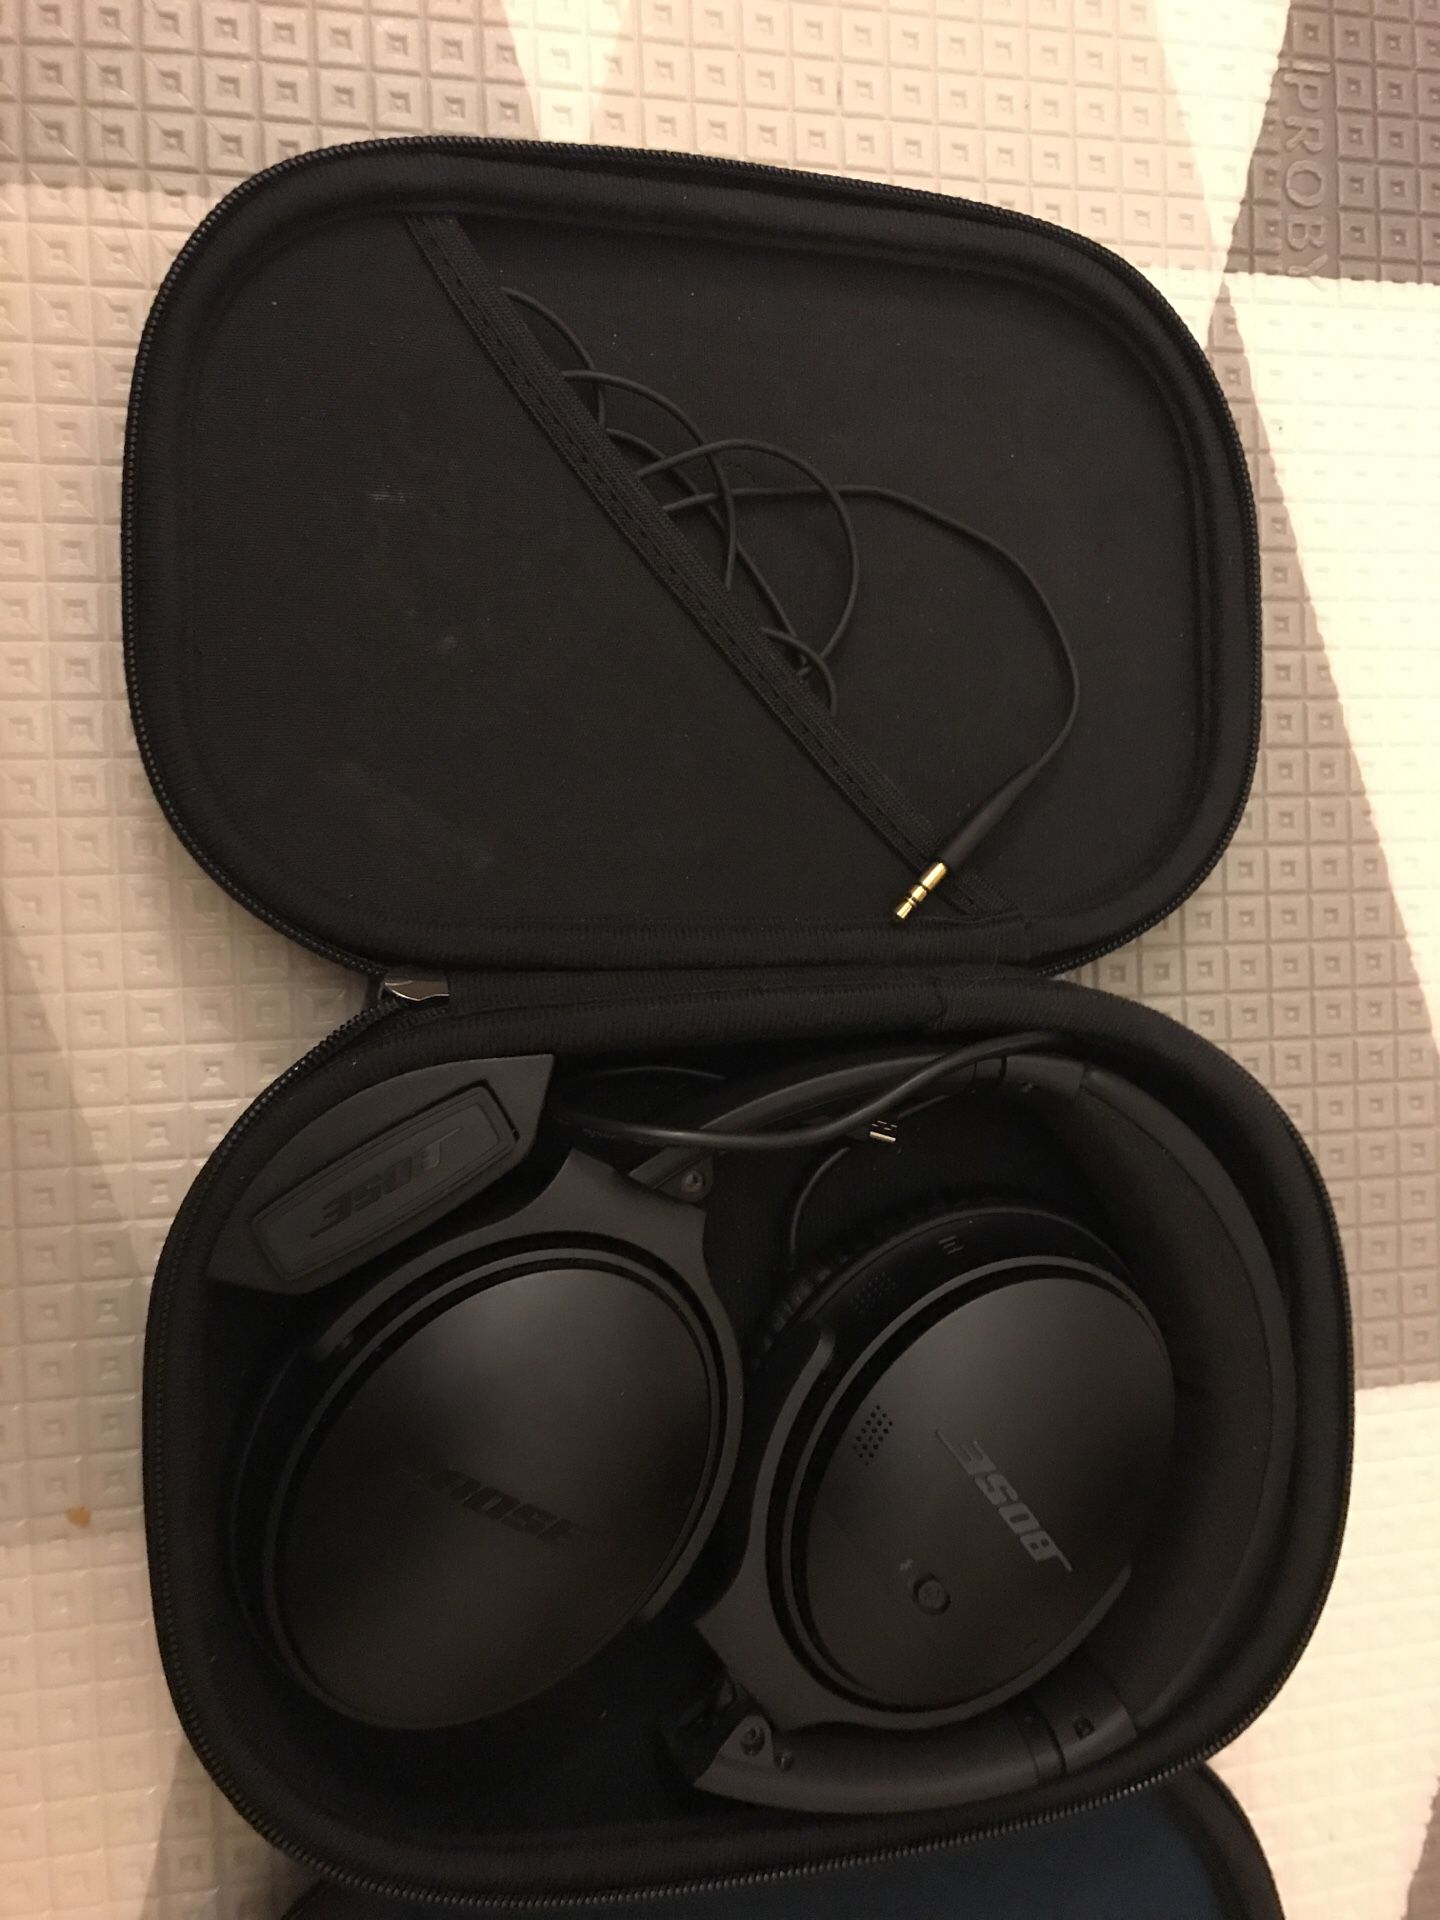 Bose headsets